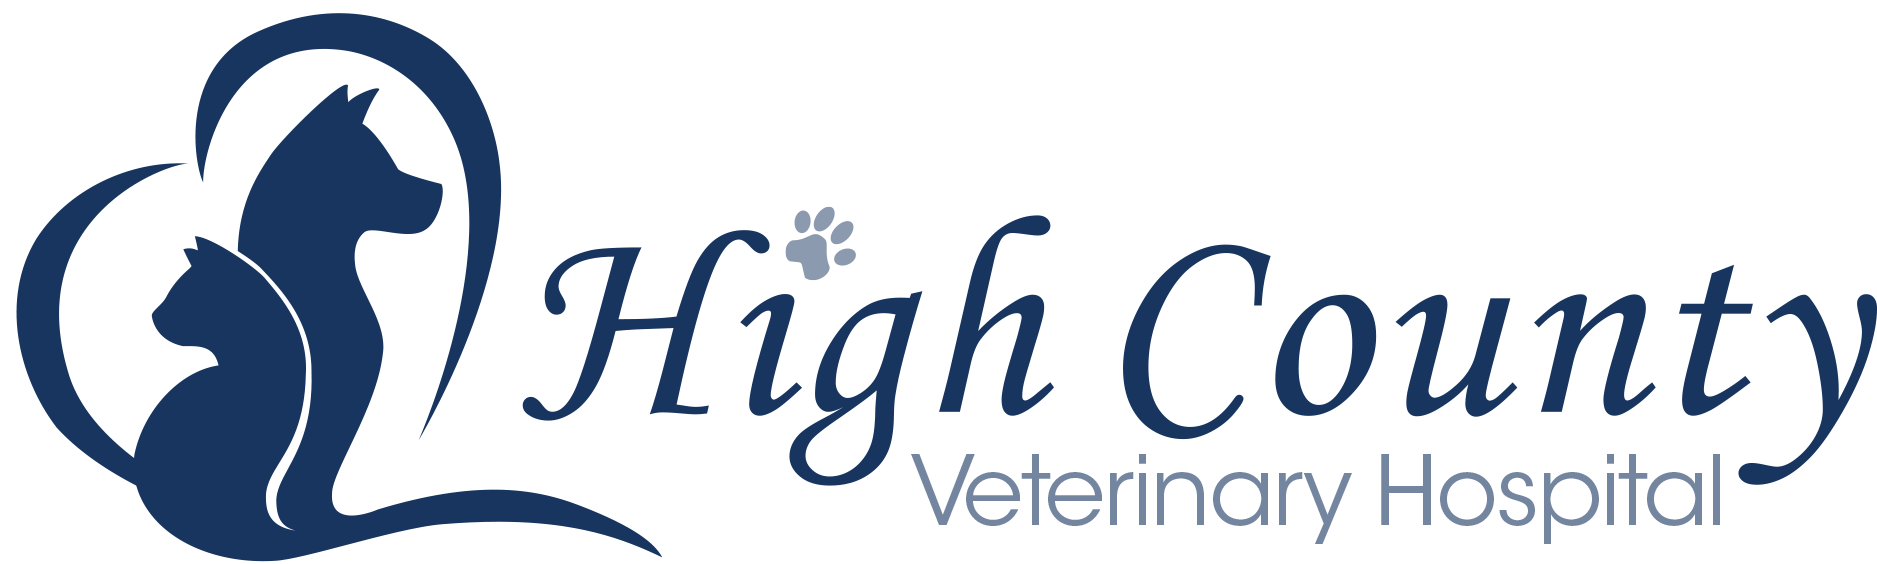 High County Veterinary Hospital